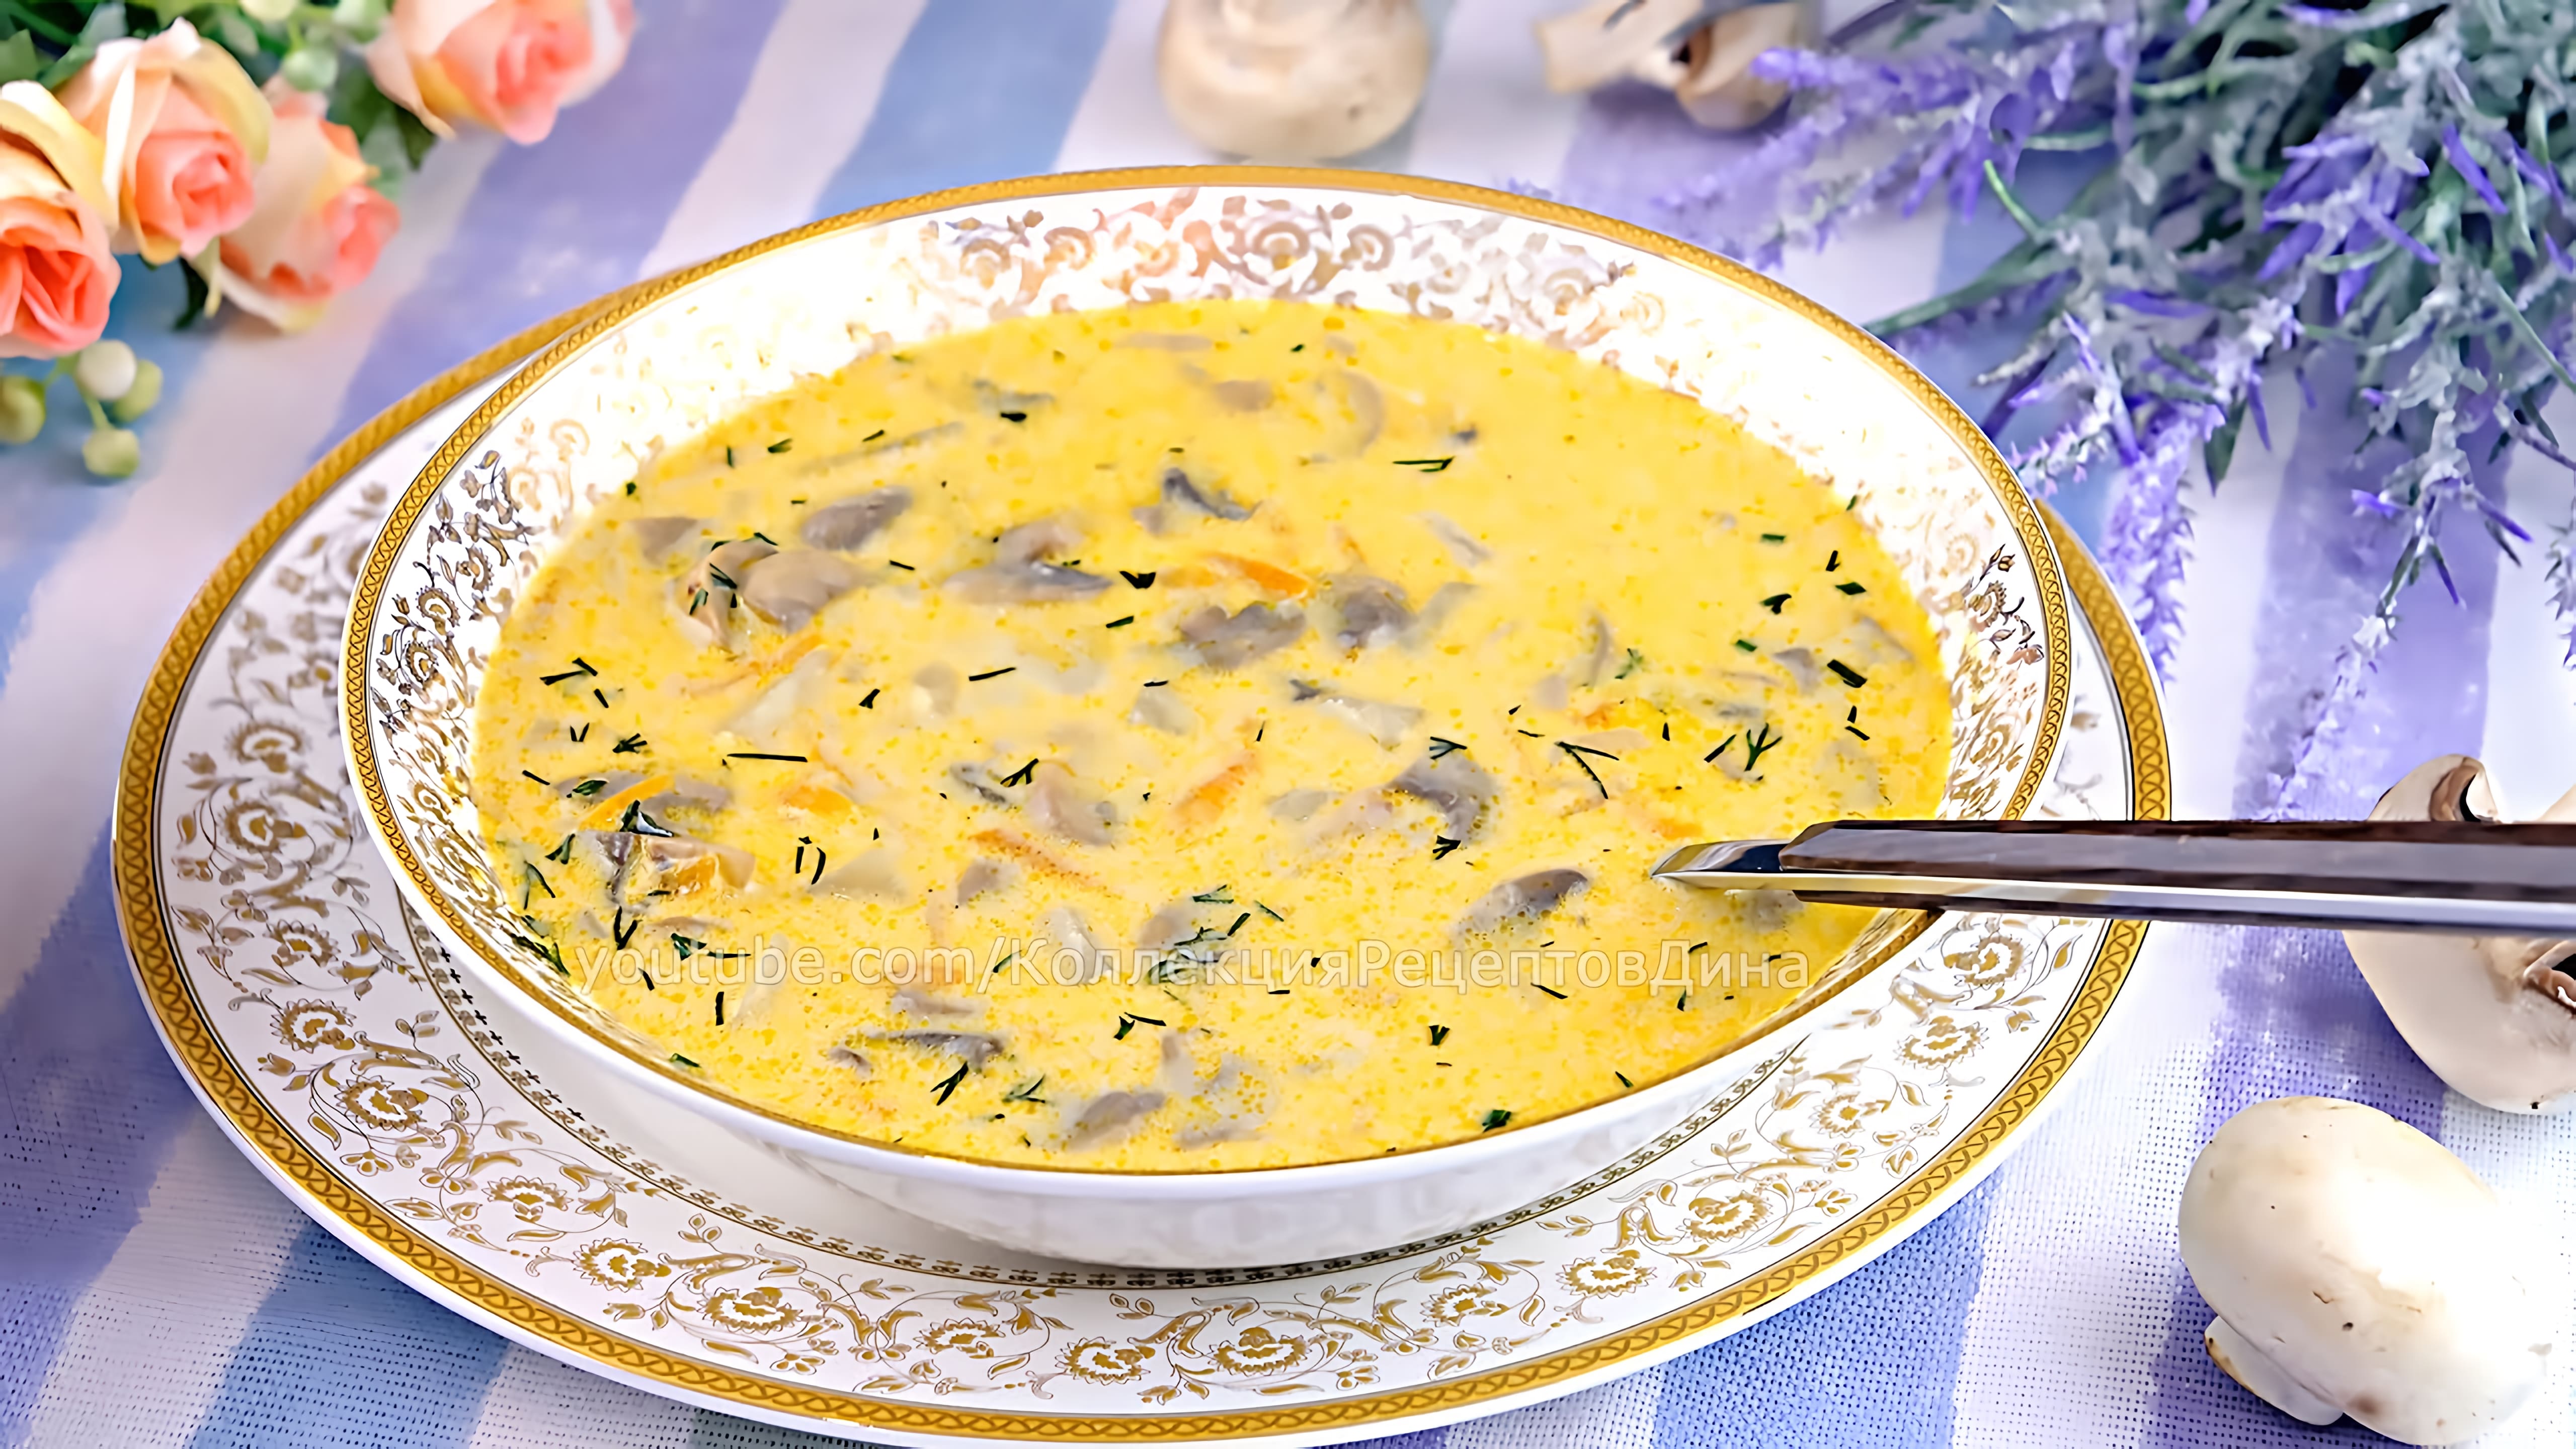 Видео: Сливочно-сырный суп с шампиньонами! Один из любимых рецептов грибного супа!